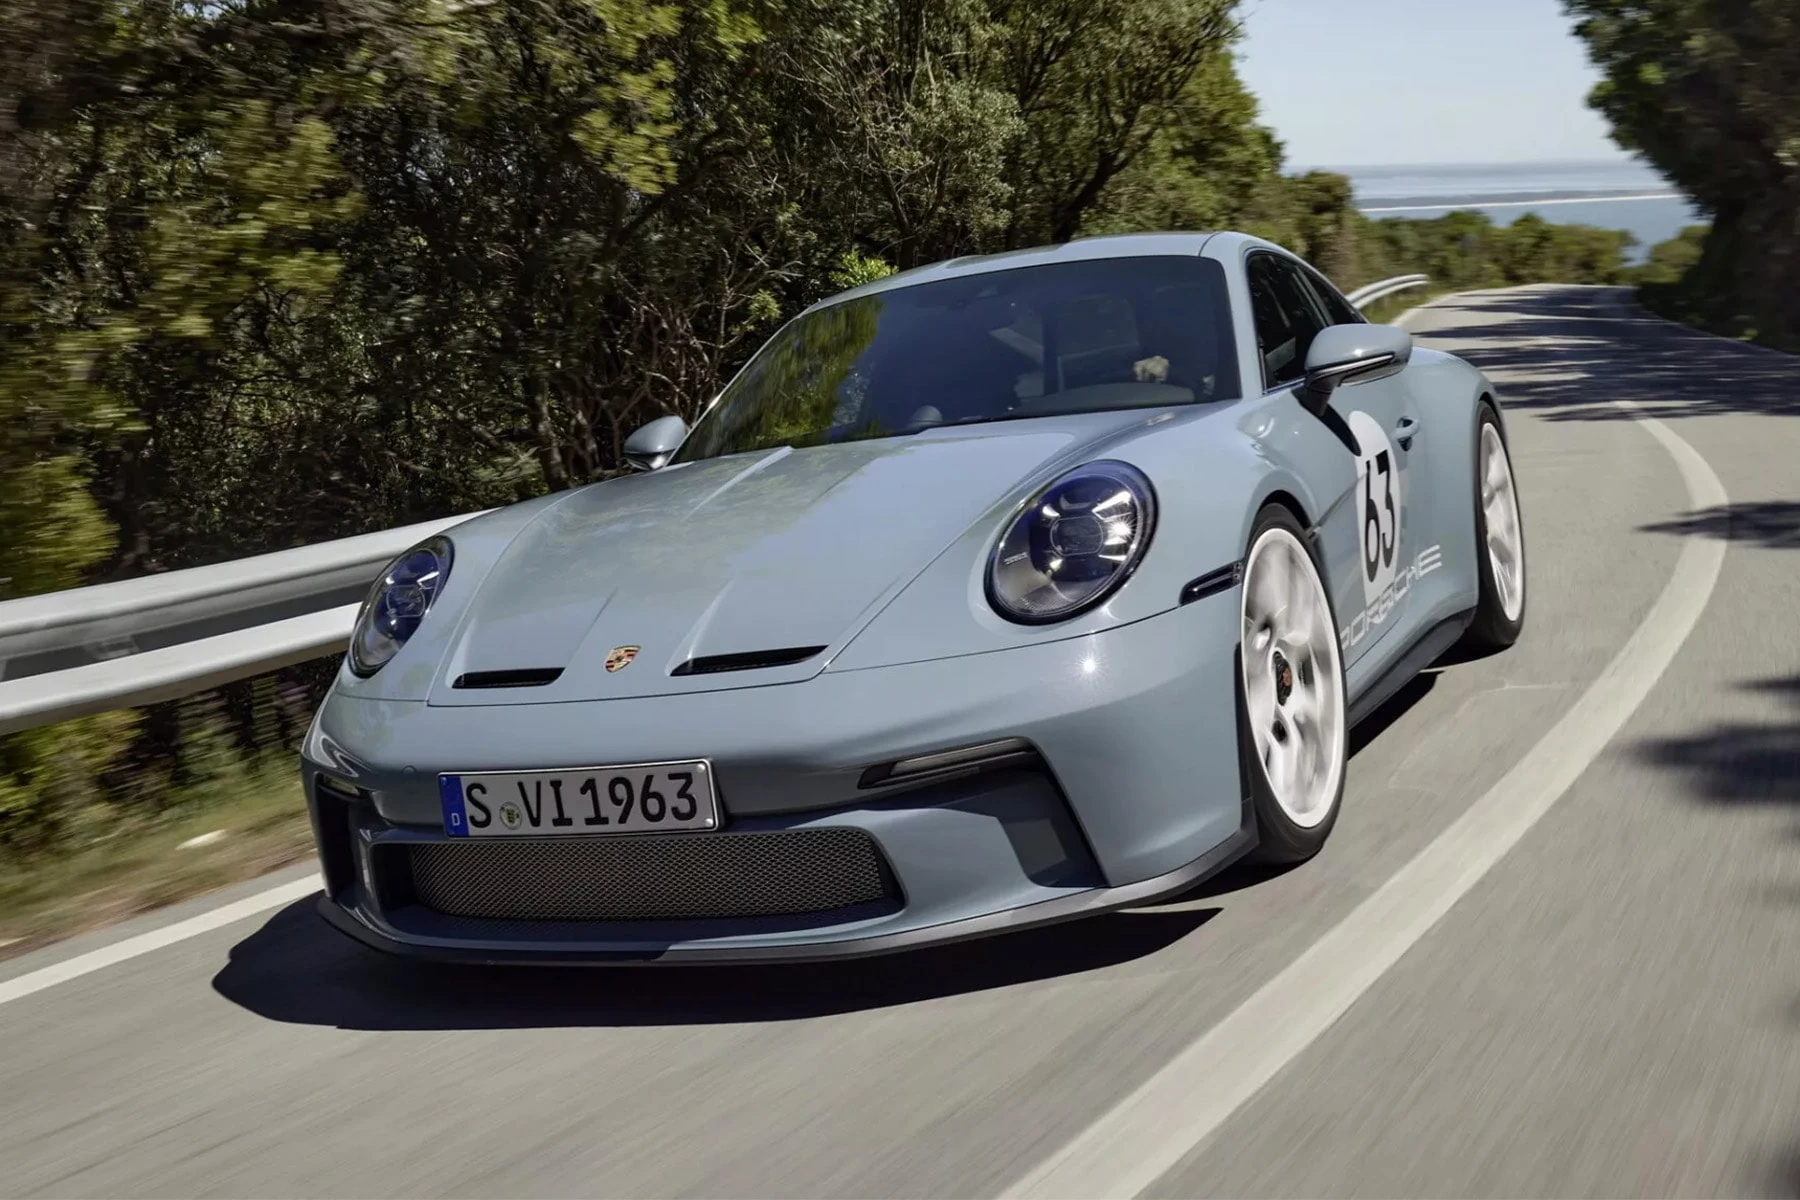 保时捷 Porsche 全球限量 1,963 辆最新车型 911 S/T 正式发表